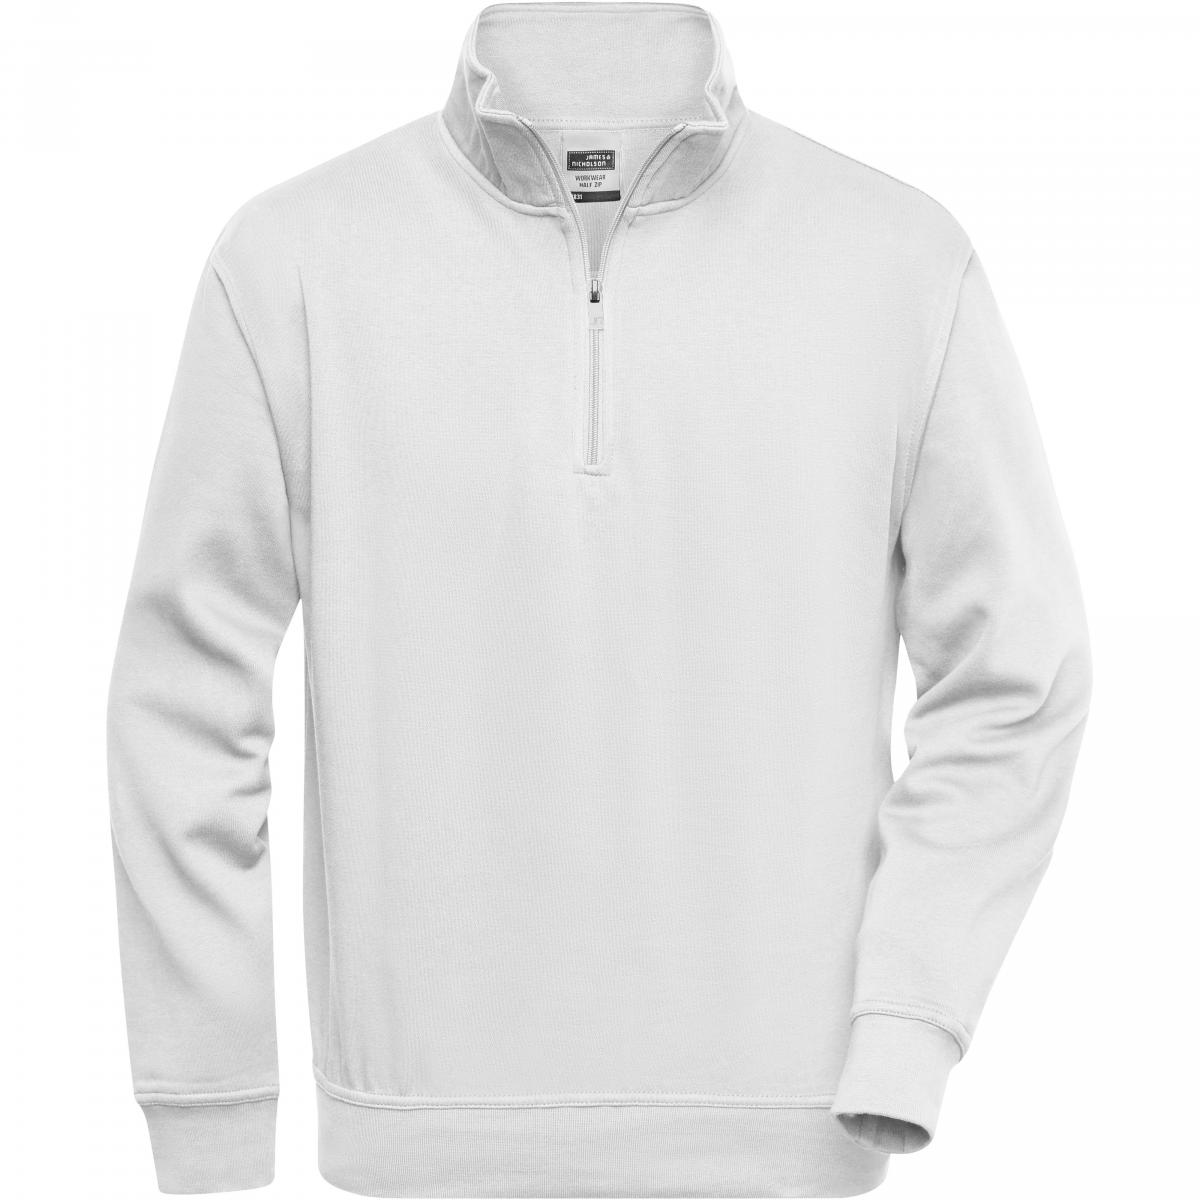 Hersteller: James+Nicholson Herstellernummer: JN831 Artikelbezeichnung: Workwear Half Zip Sweatshirt +Waschbar bis 60 °C Farbe: White